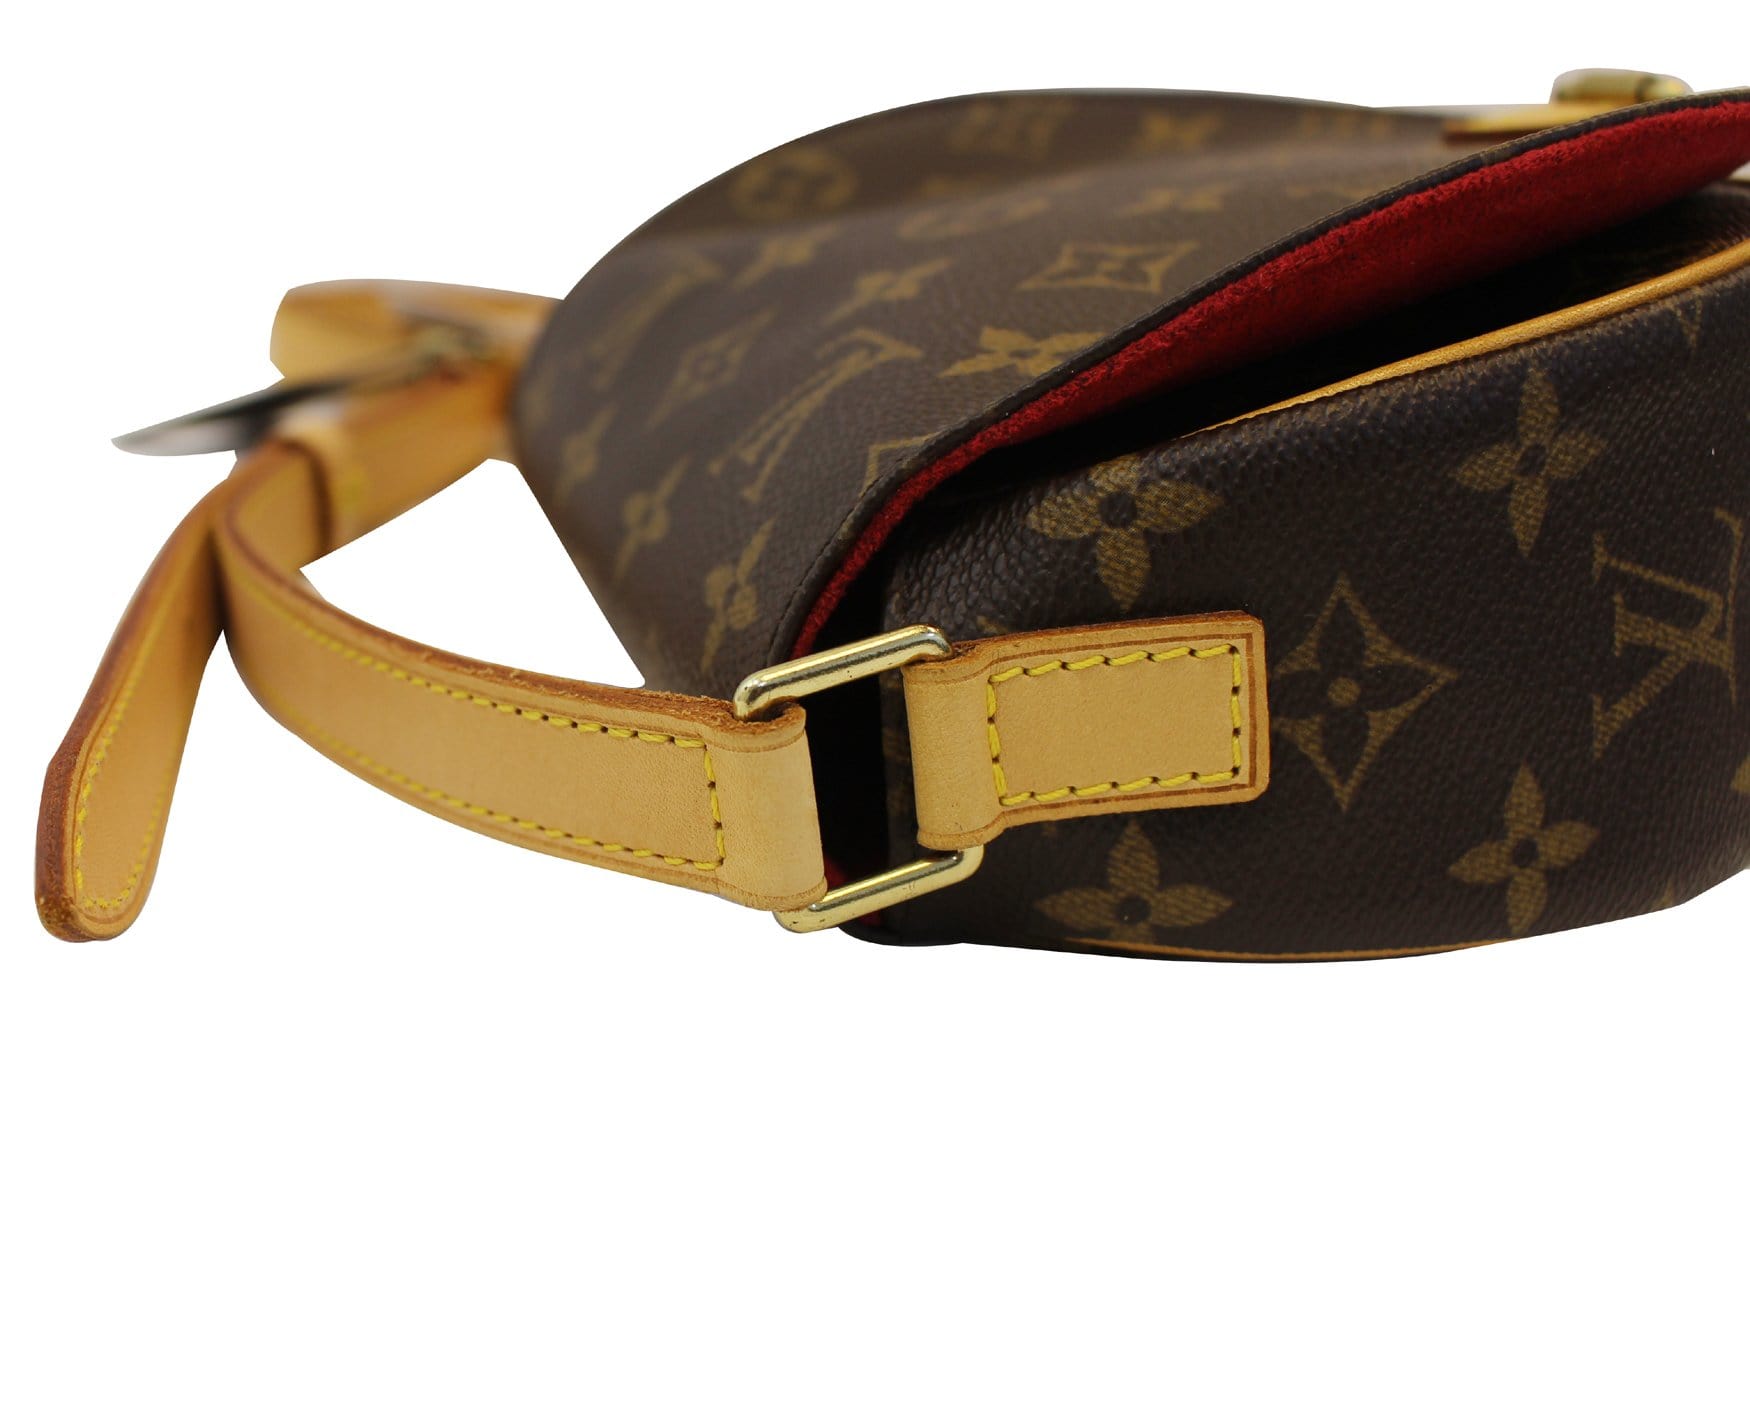 Louis Vuitton Tambourine Bag - Brown Shoulder Bags, Handbags - LOU25042